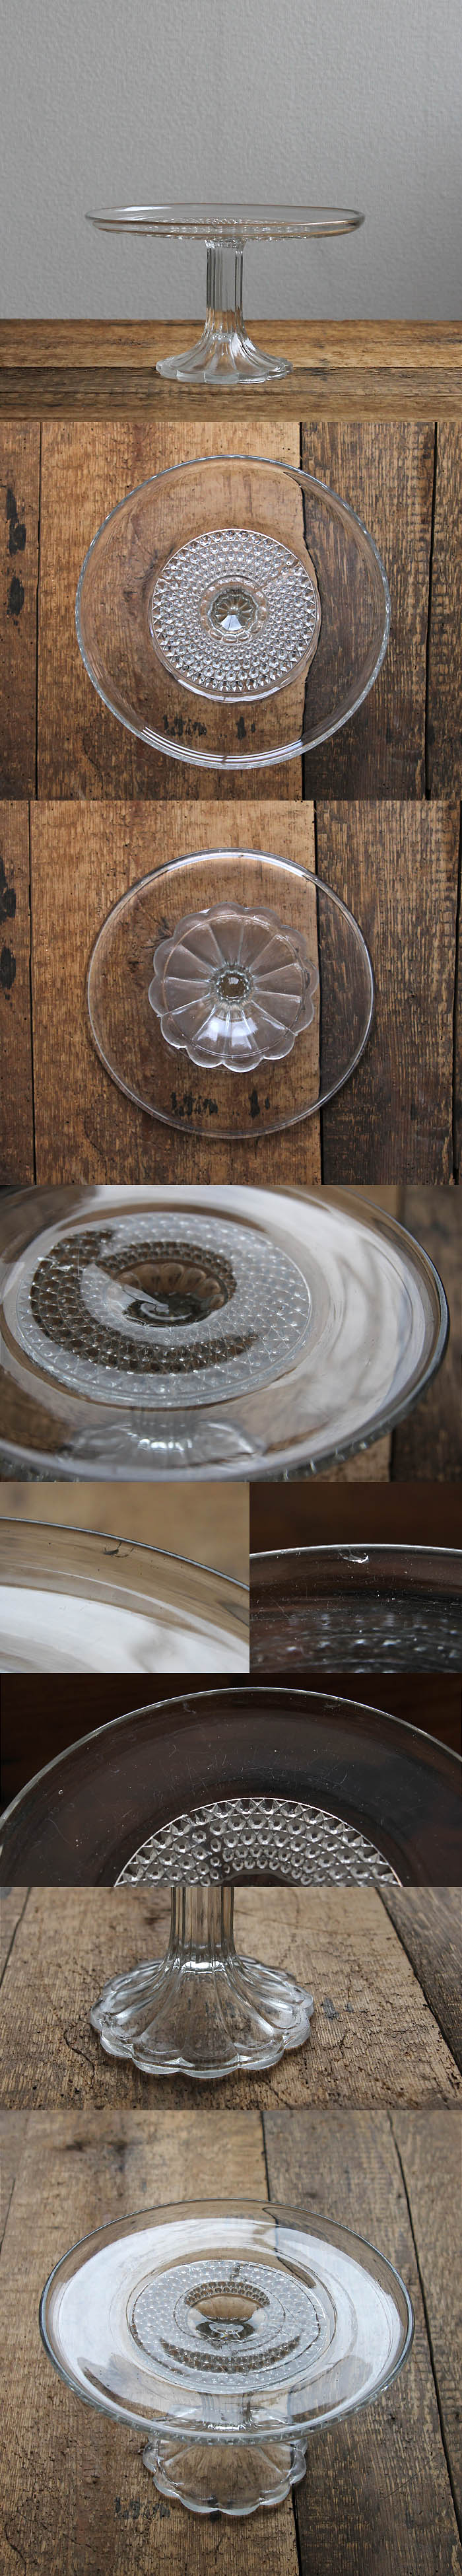 イギリス アンティーク ガラスケーキスタンド コンポート皿 食器 インテリア雑貨「プレスガラス」P-023